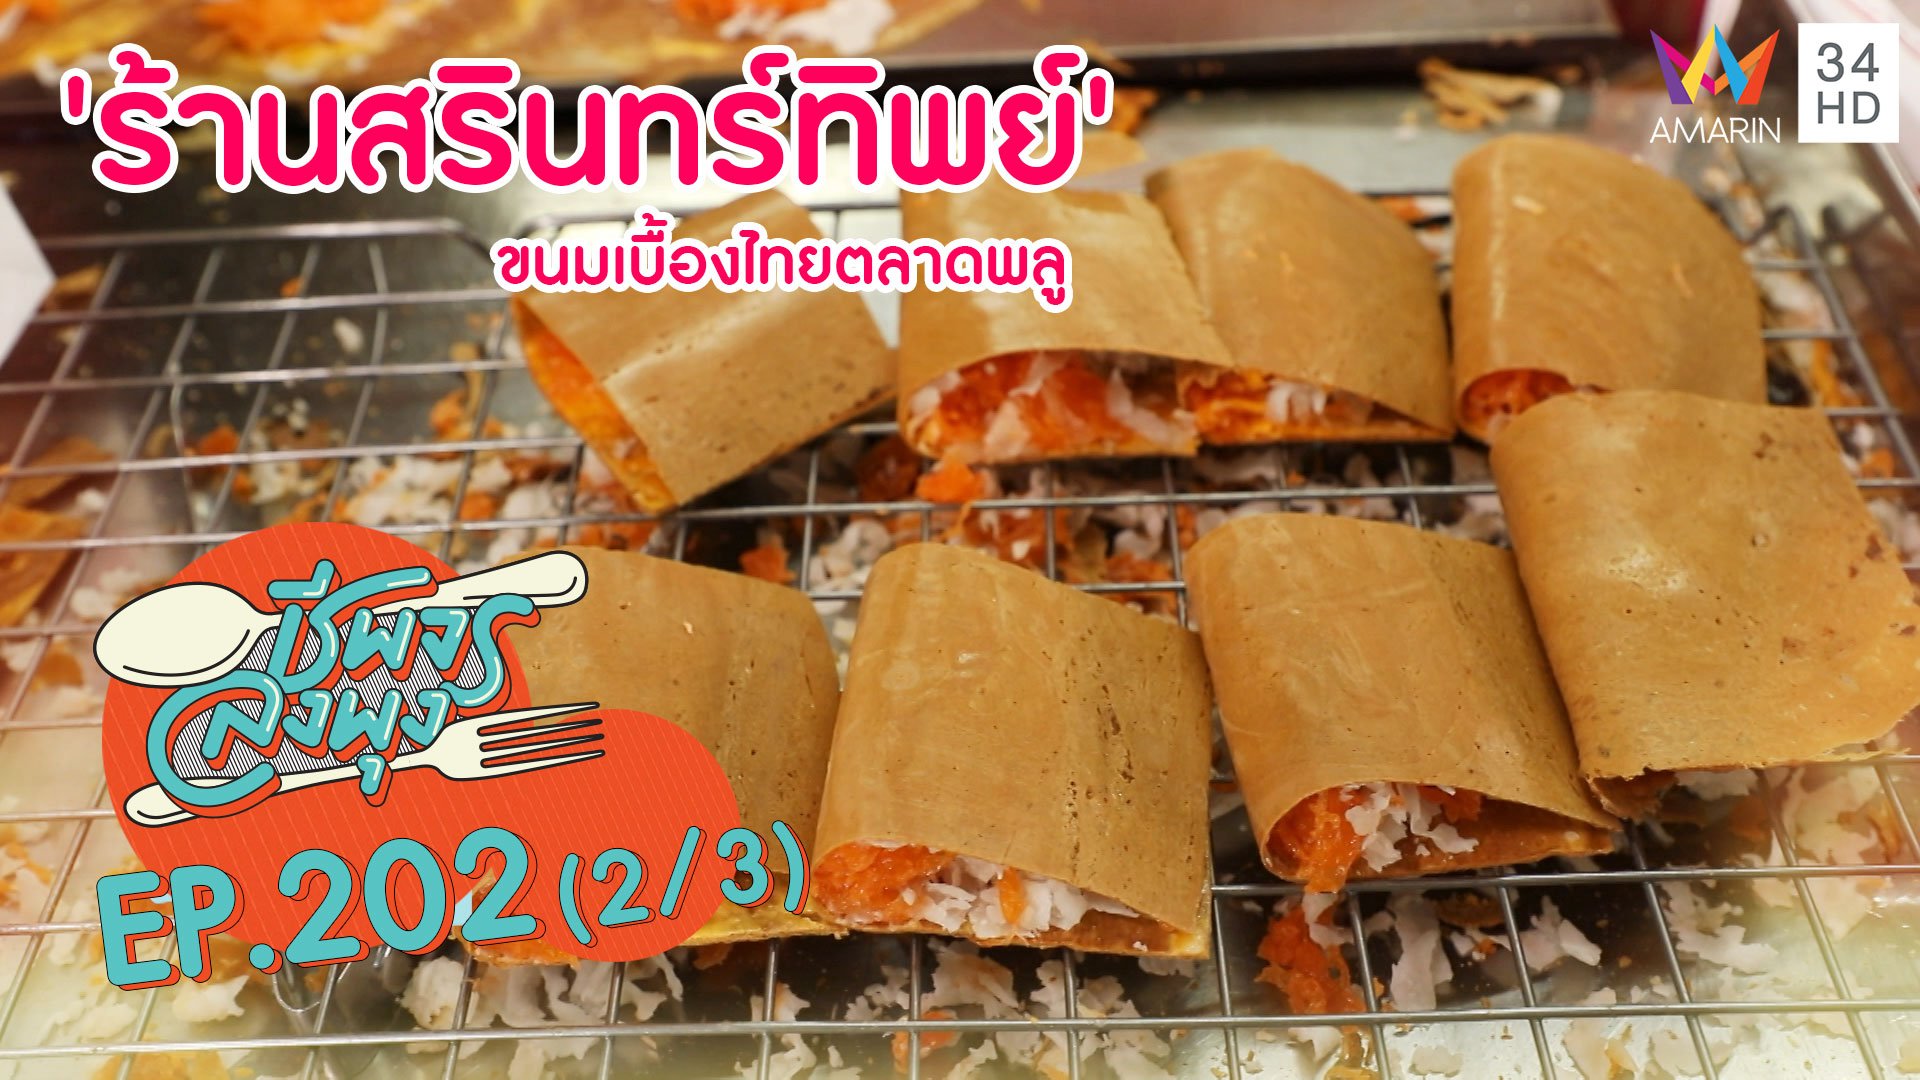 อร่อยดั้งเดิม 'ร้านสรินทร์ทิพย์' ขนมเบื้องไทยตลาดพลู | ชีพจรลงพุง | 1 มี.ค. 63 (2/3) | AMARIN TVHD34